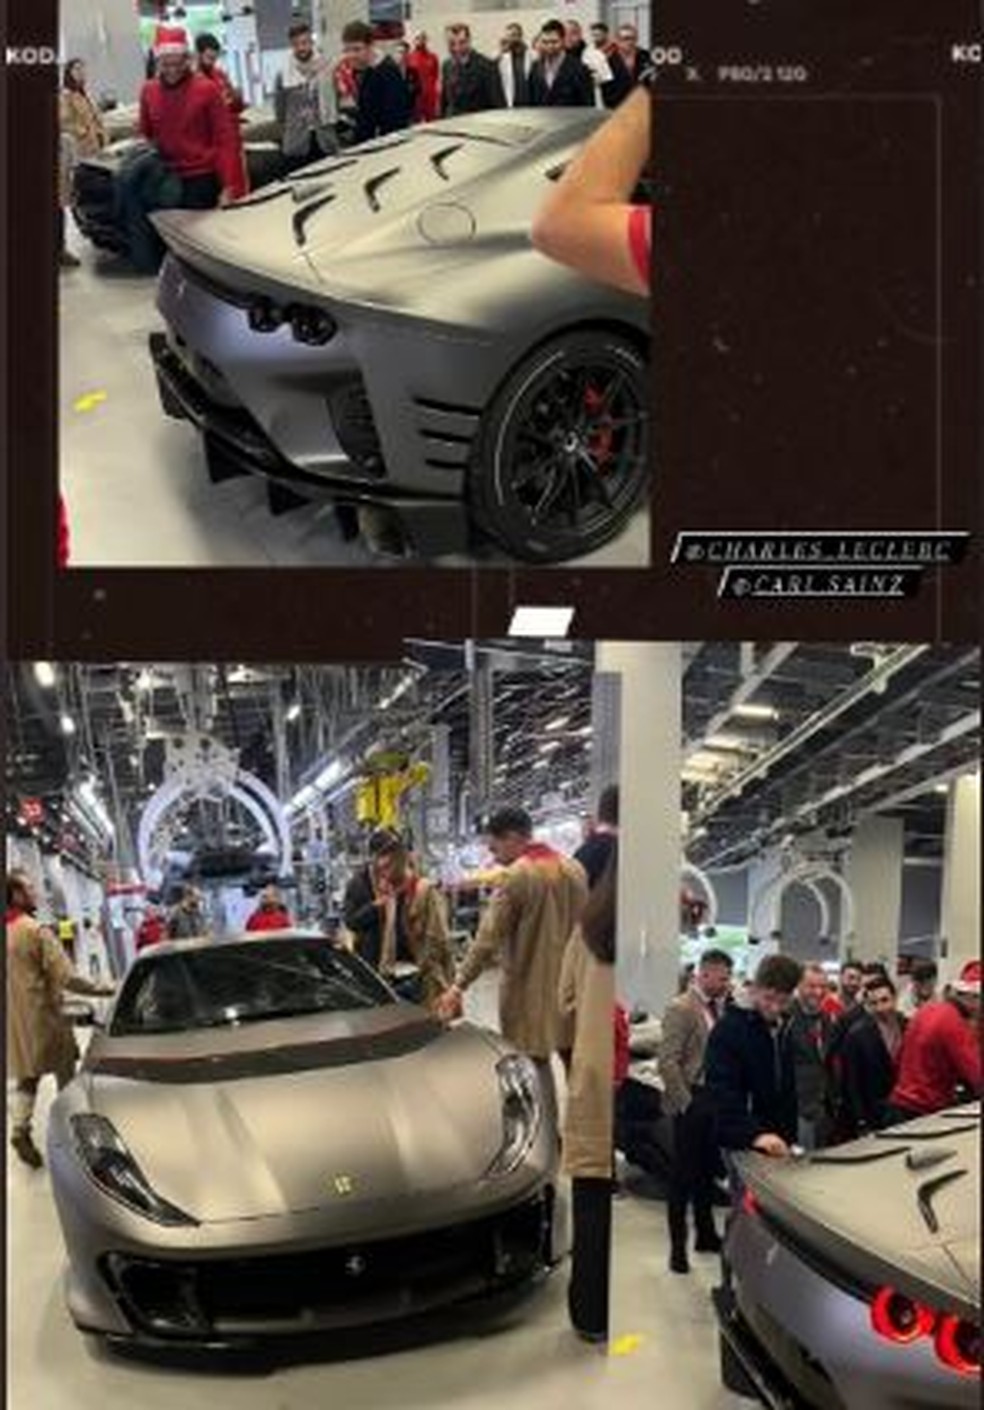 Mais de um ano após a compra, Carlos Sainz recebe sua Ferrari customizada — Foto: Reprodução/Twitter